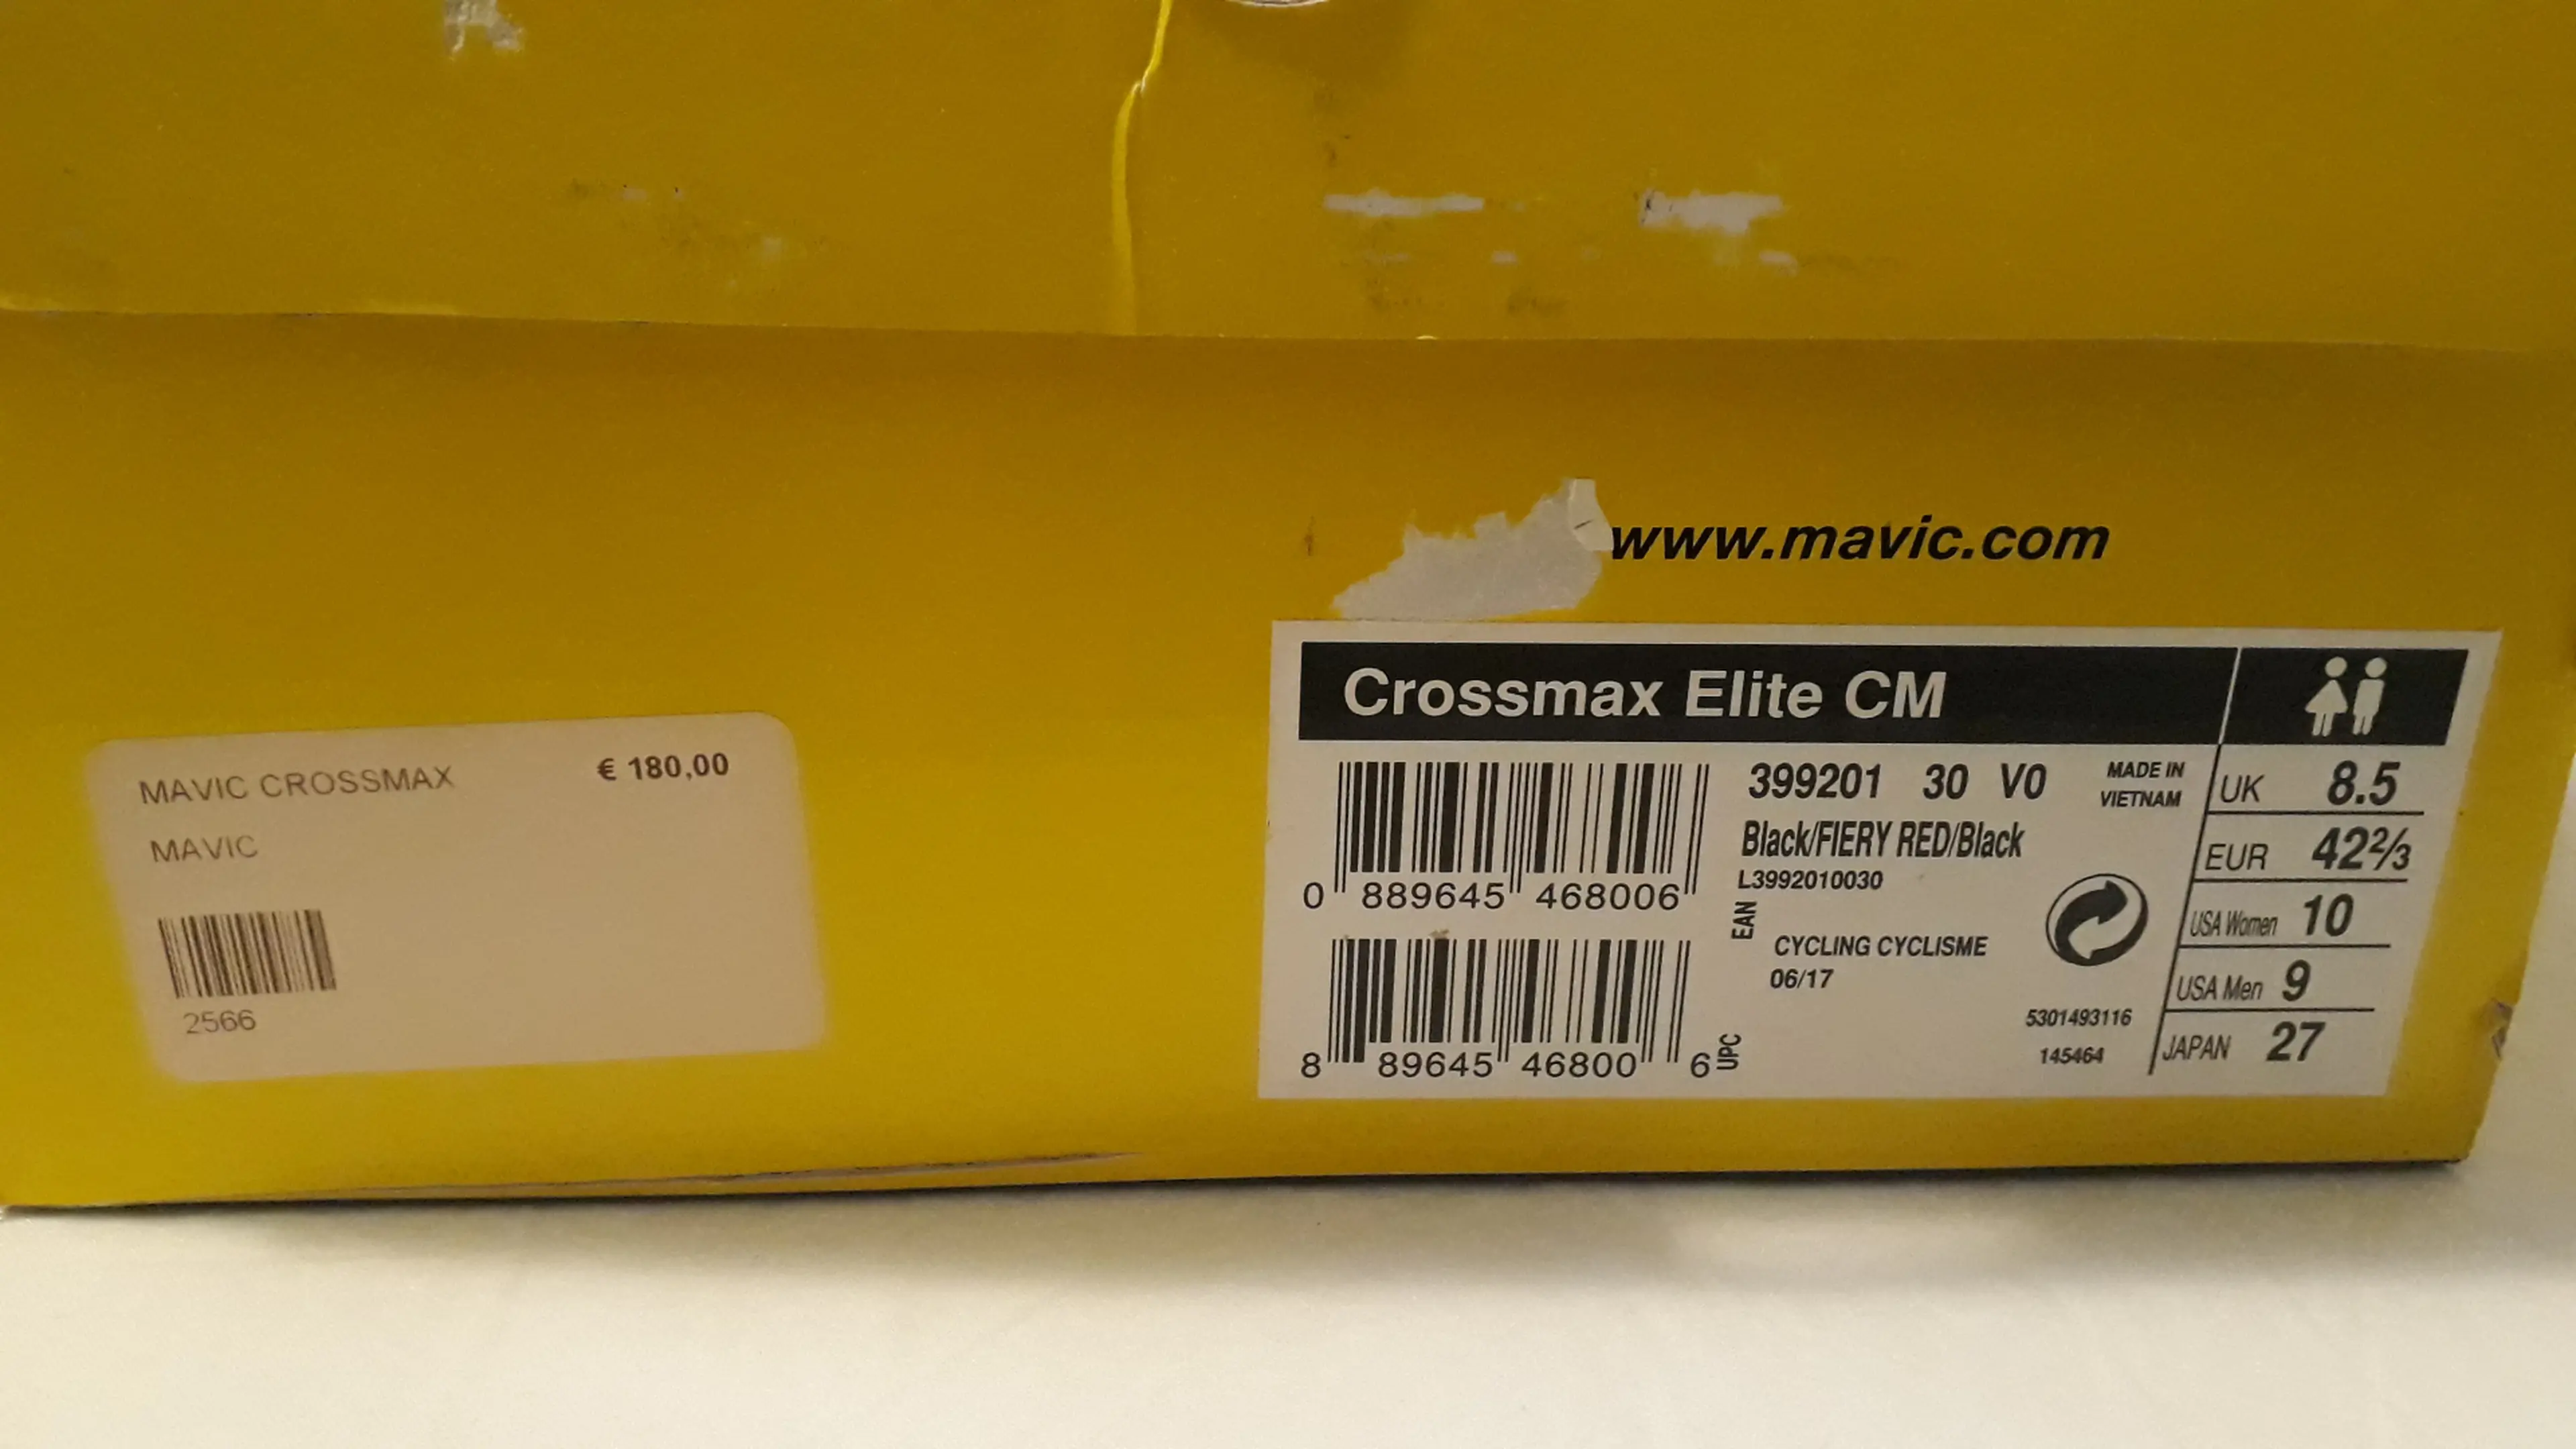 3. Mavic Crossmax Elite CM 42 2/3, Nou